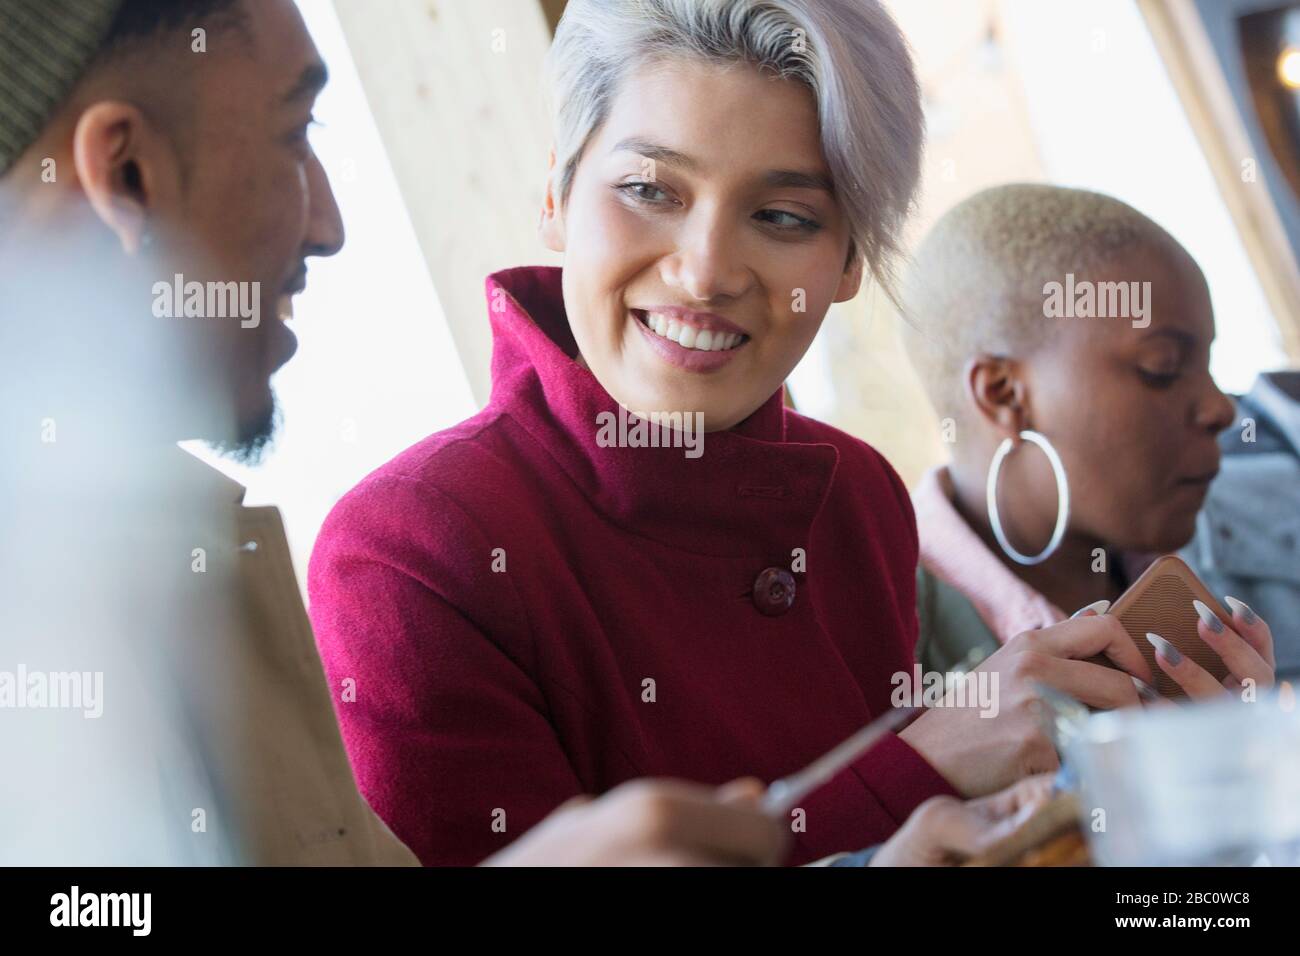 Lächelnde junge Frau im Gespräch mit einem Freund Stockfoto